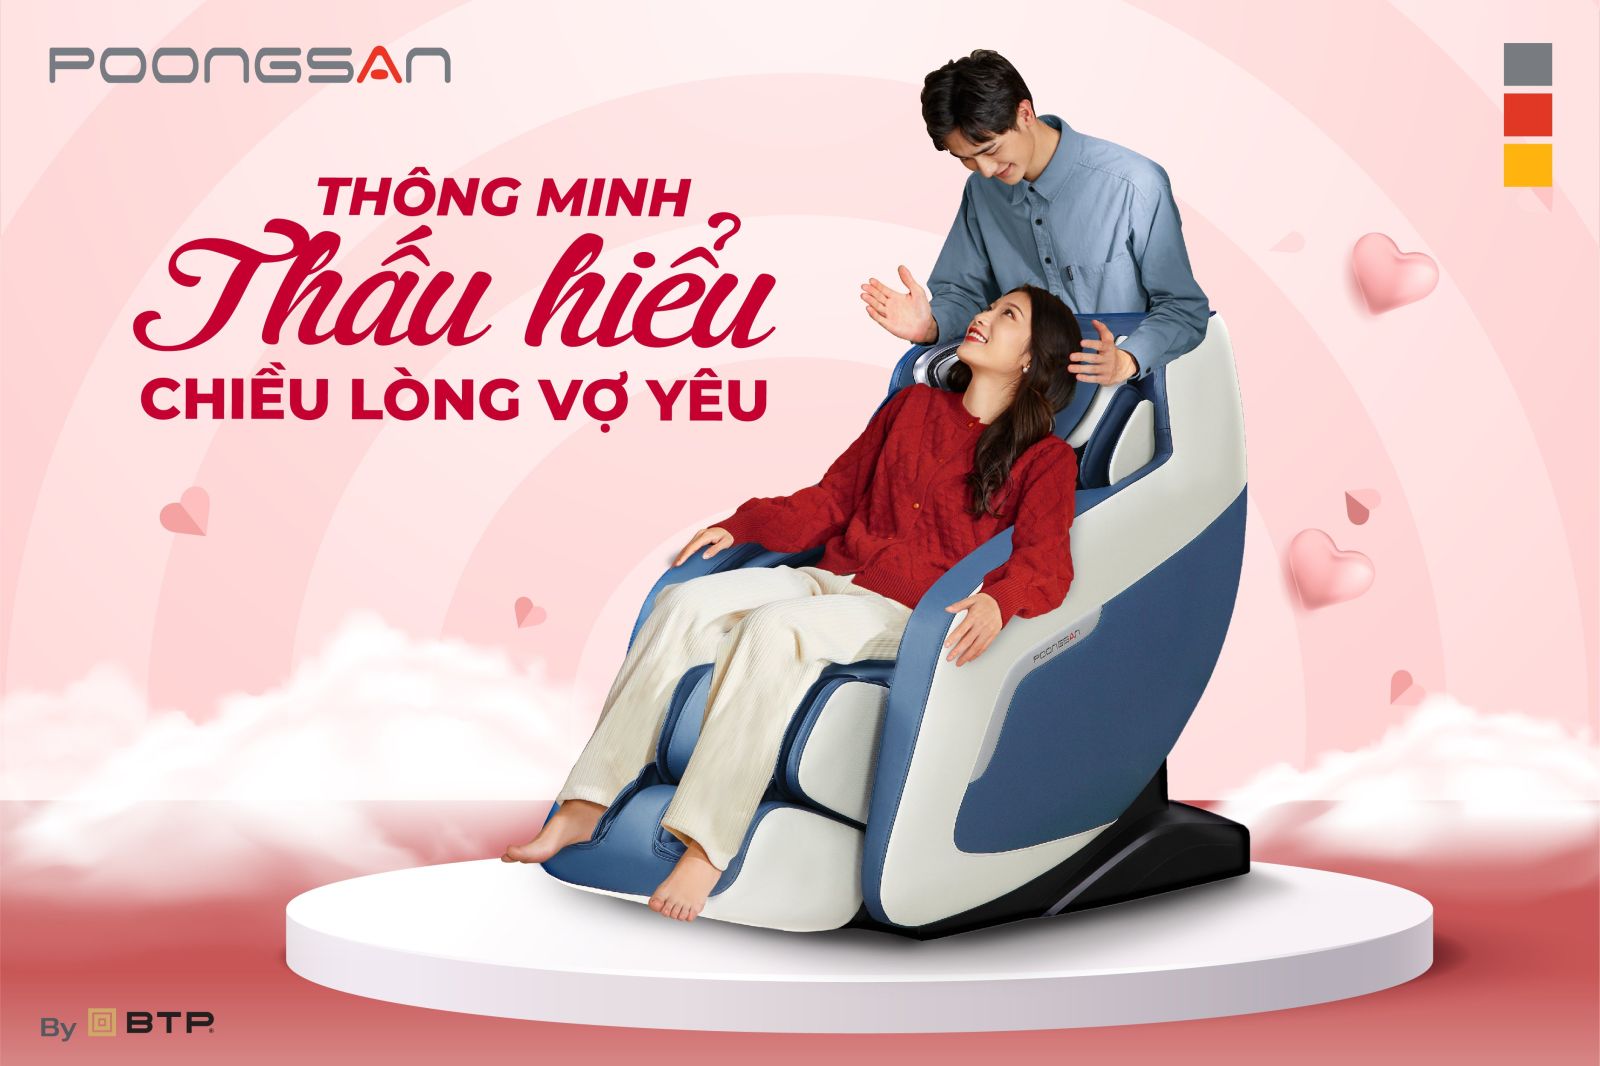 Ghế massage được ví như một người trợ lý thông minh thấu hiểu chiều lòng vợ yêu